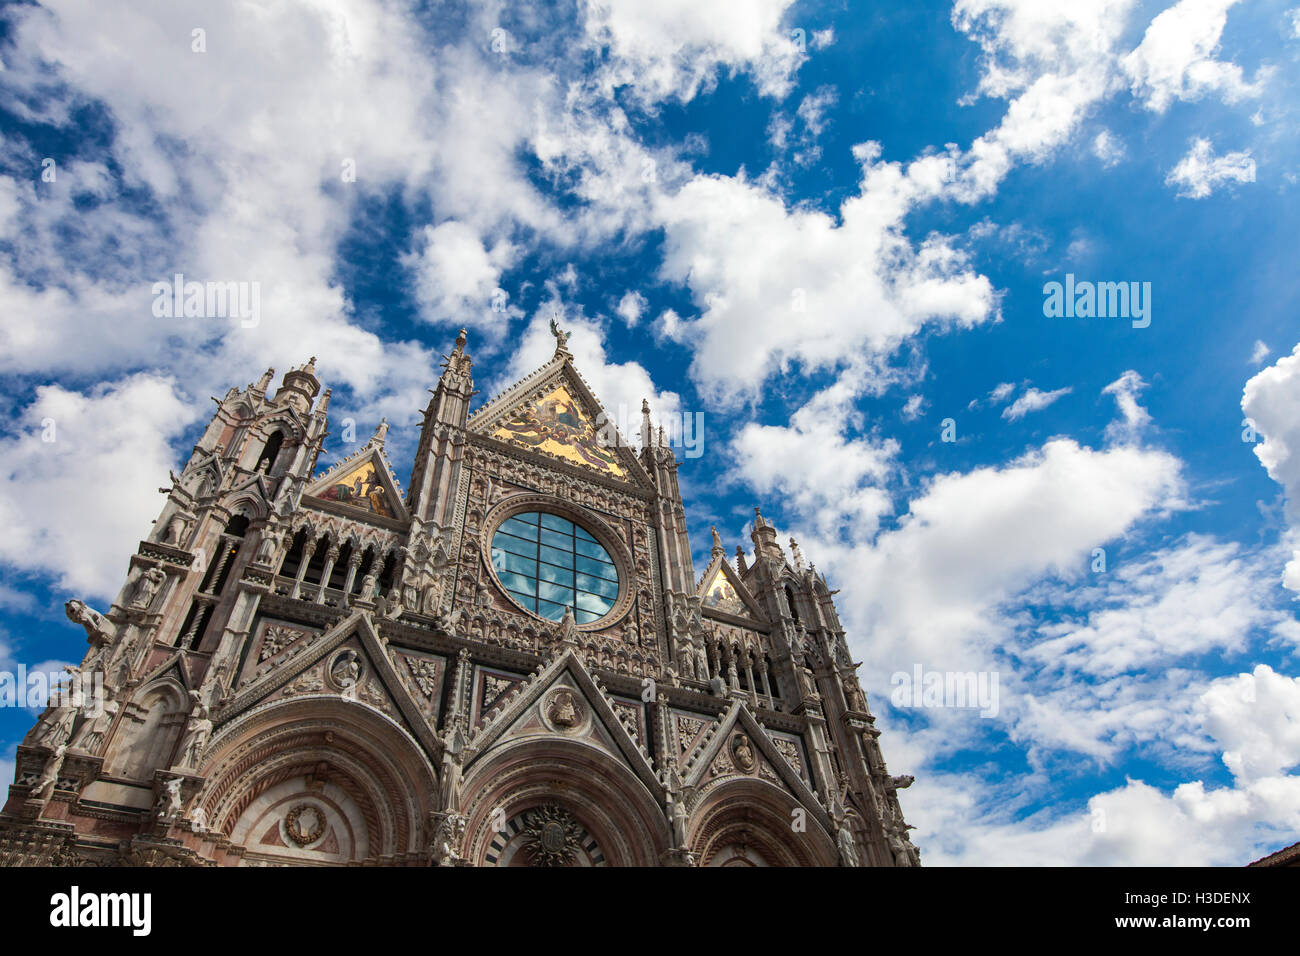 Außenbereich und architektonische Details des Doms, Dom von Siena, Italien Stockfoto